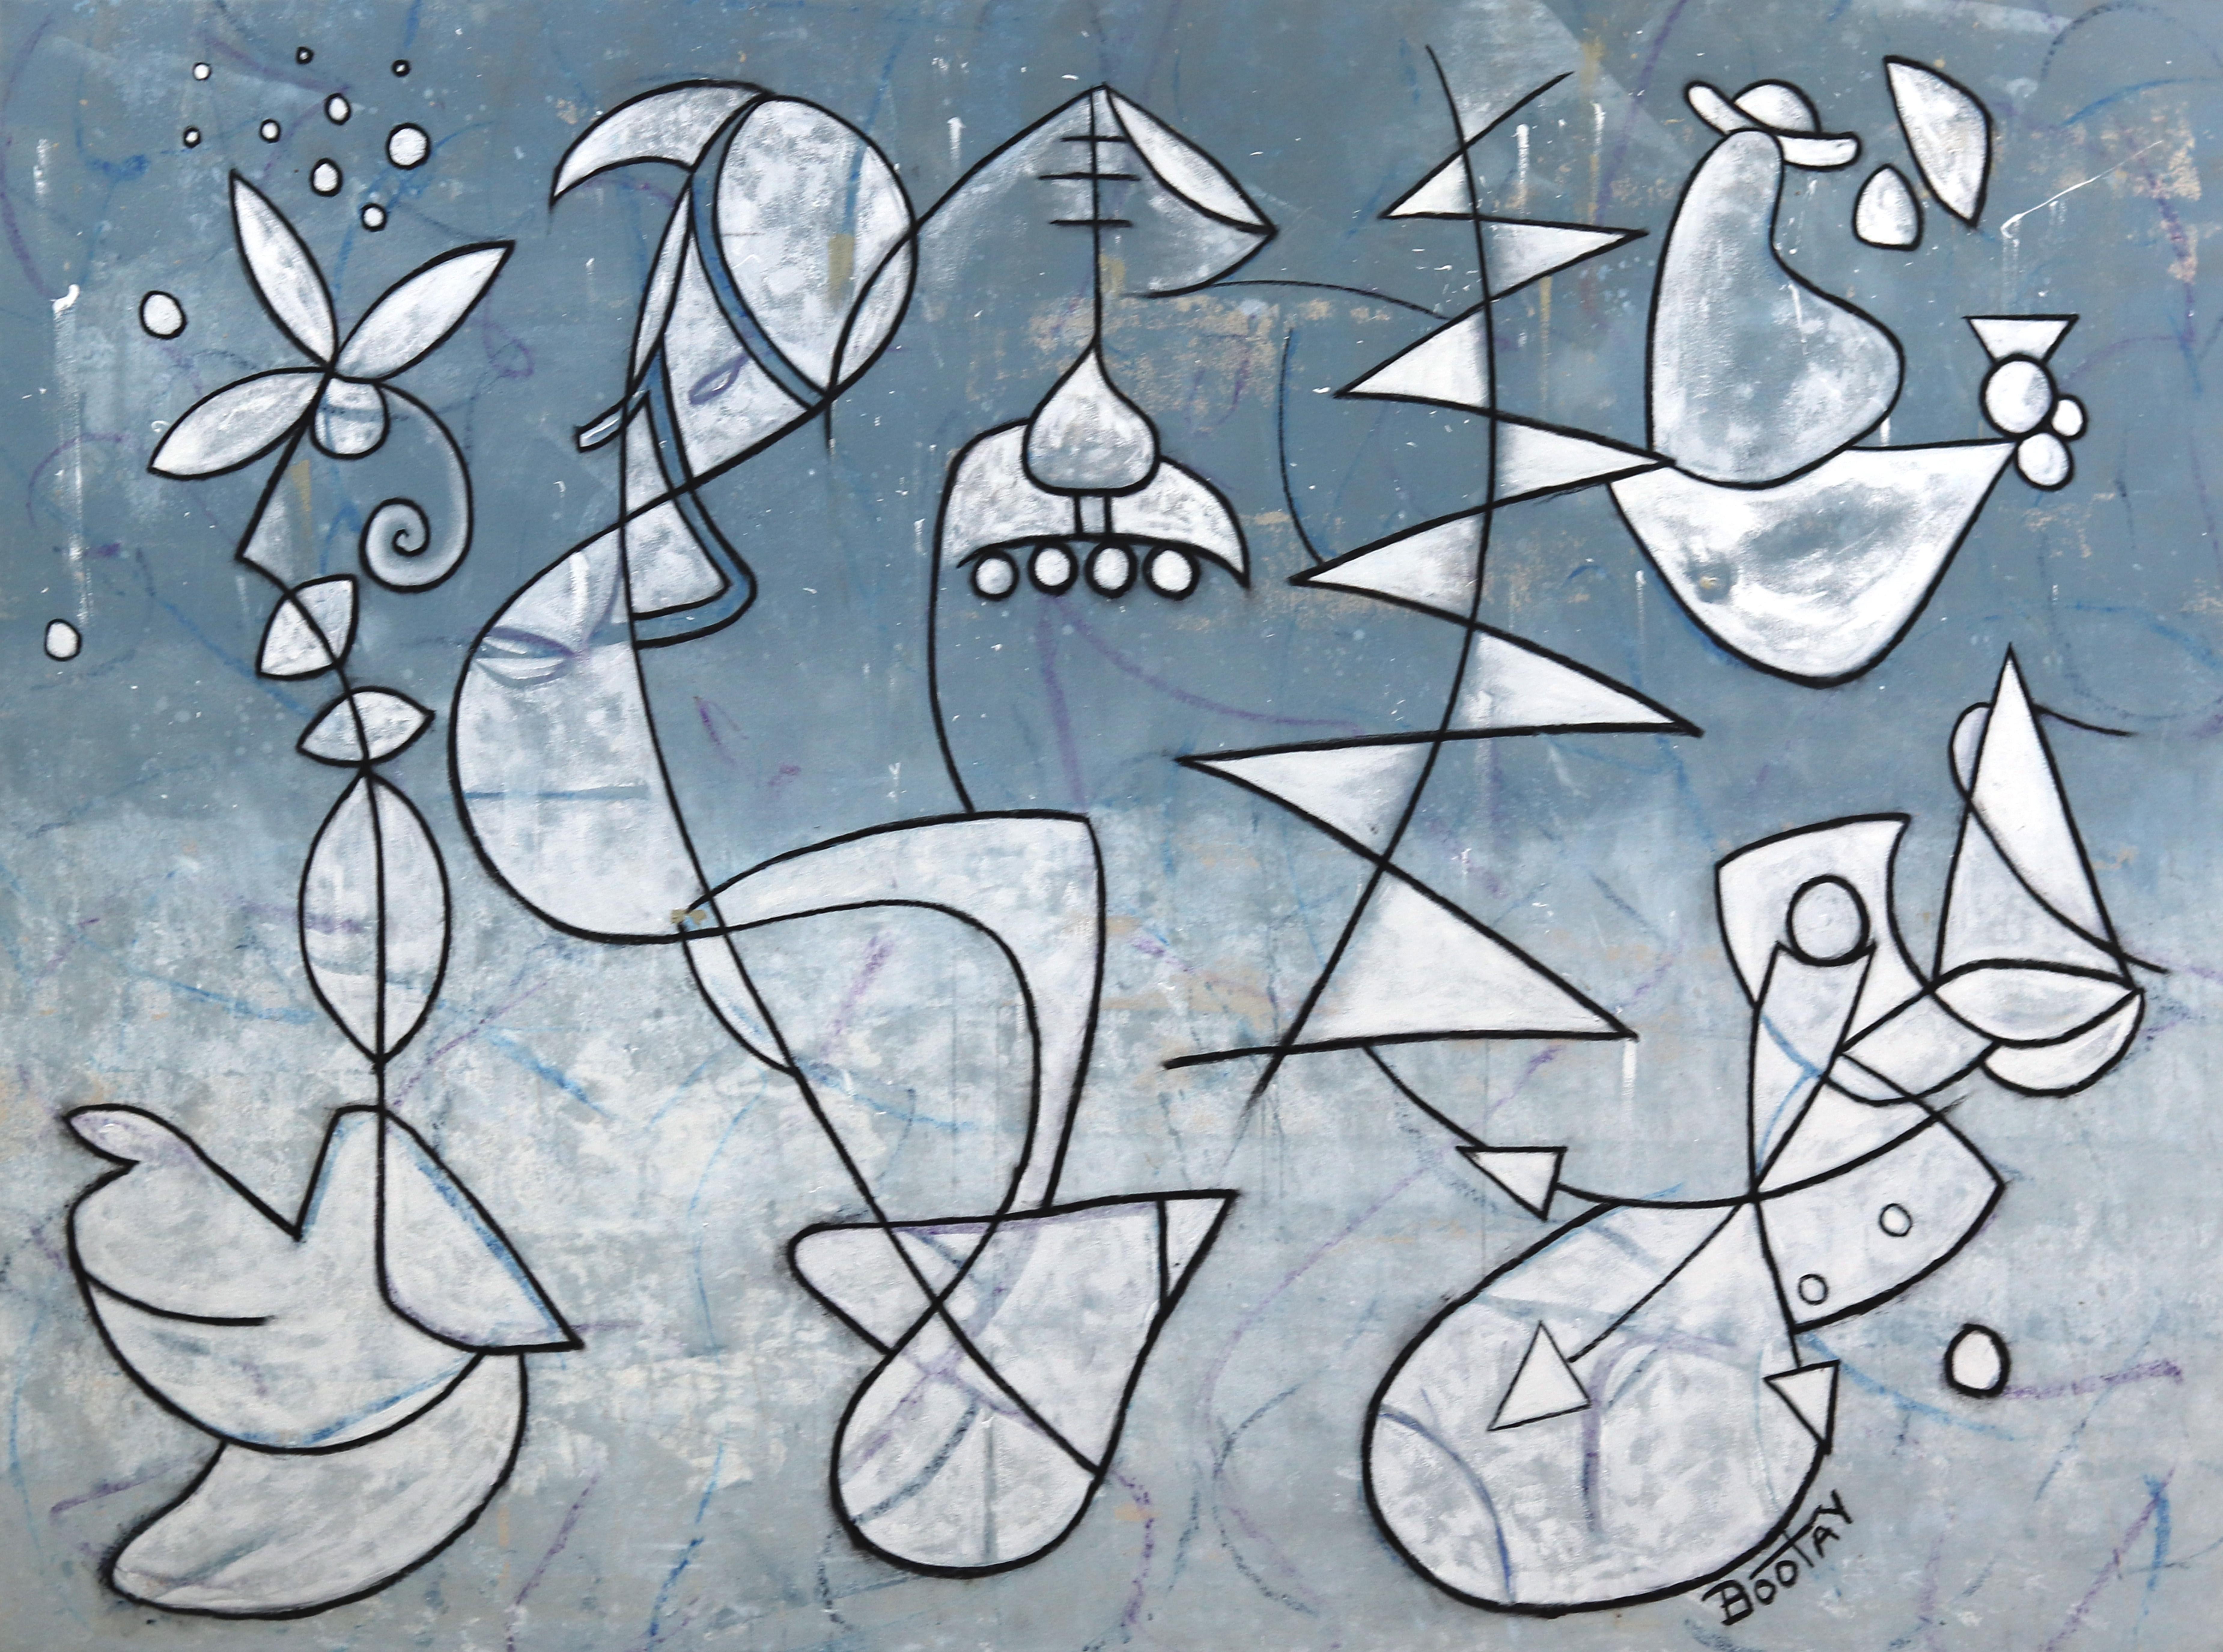 Outer Banks - Großes Original Mixed Media-Kunstwerk in Blau auf Leinwand, fertig zum Hängen